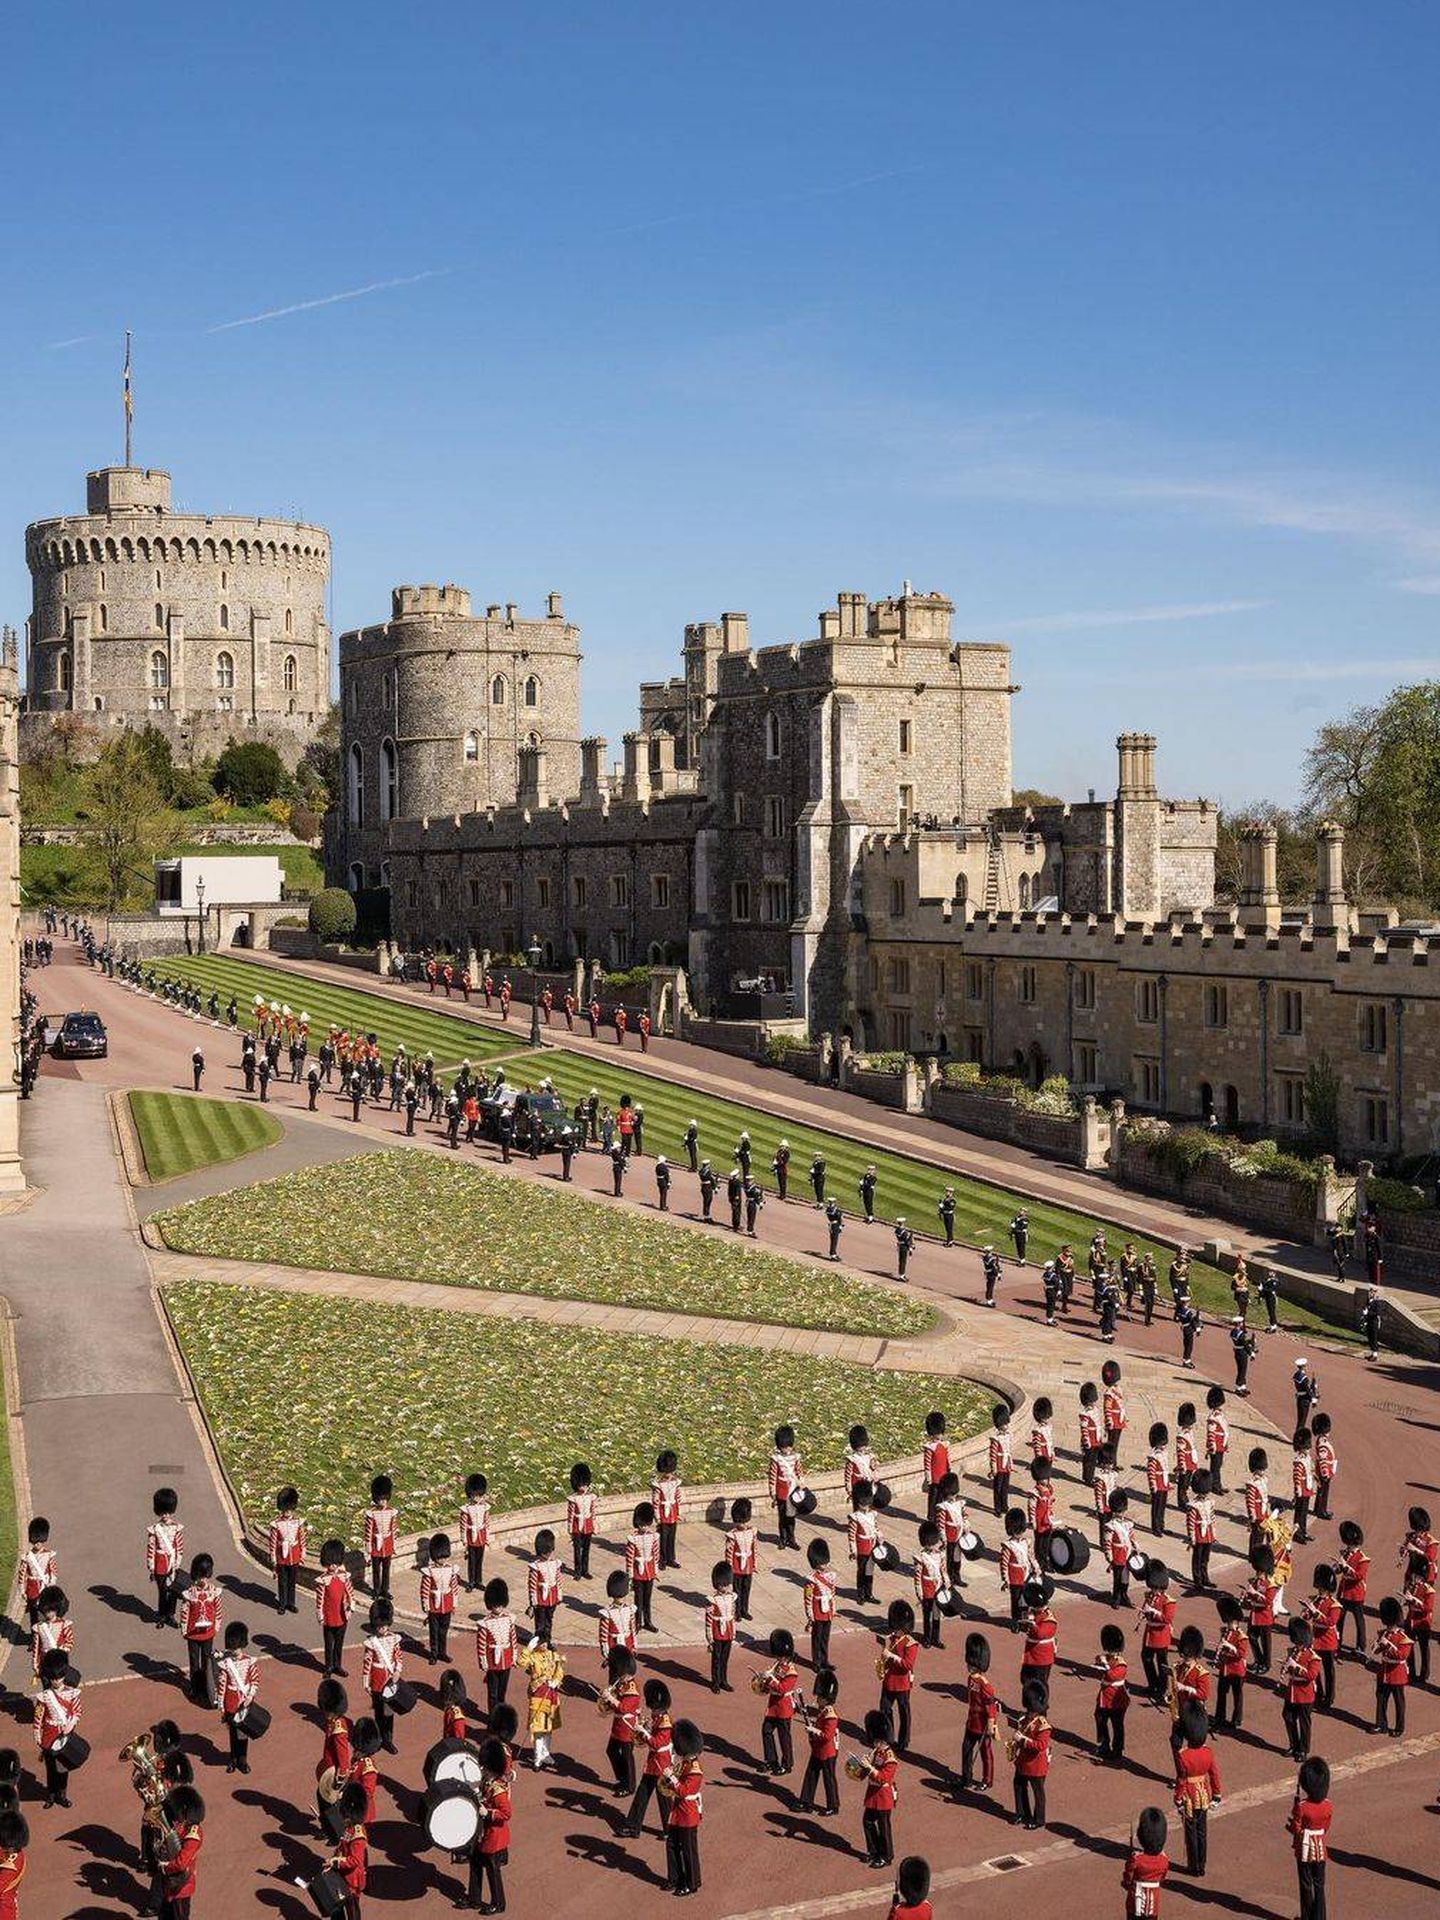 Miembros del ejército en el castillo de Windsor. (Palacio de Kensington)